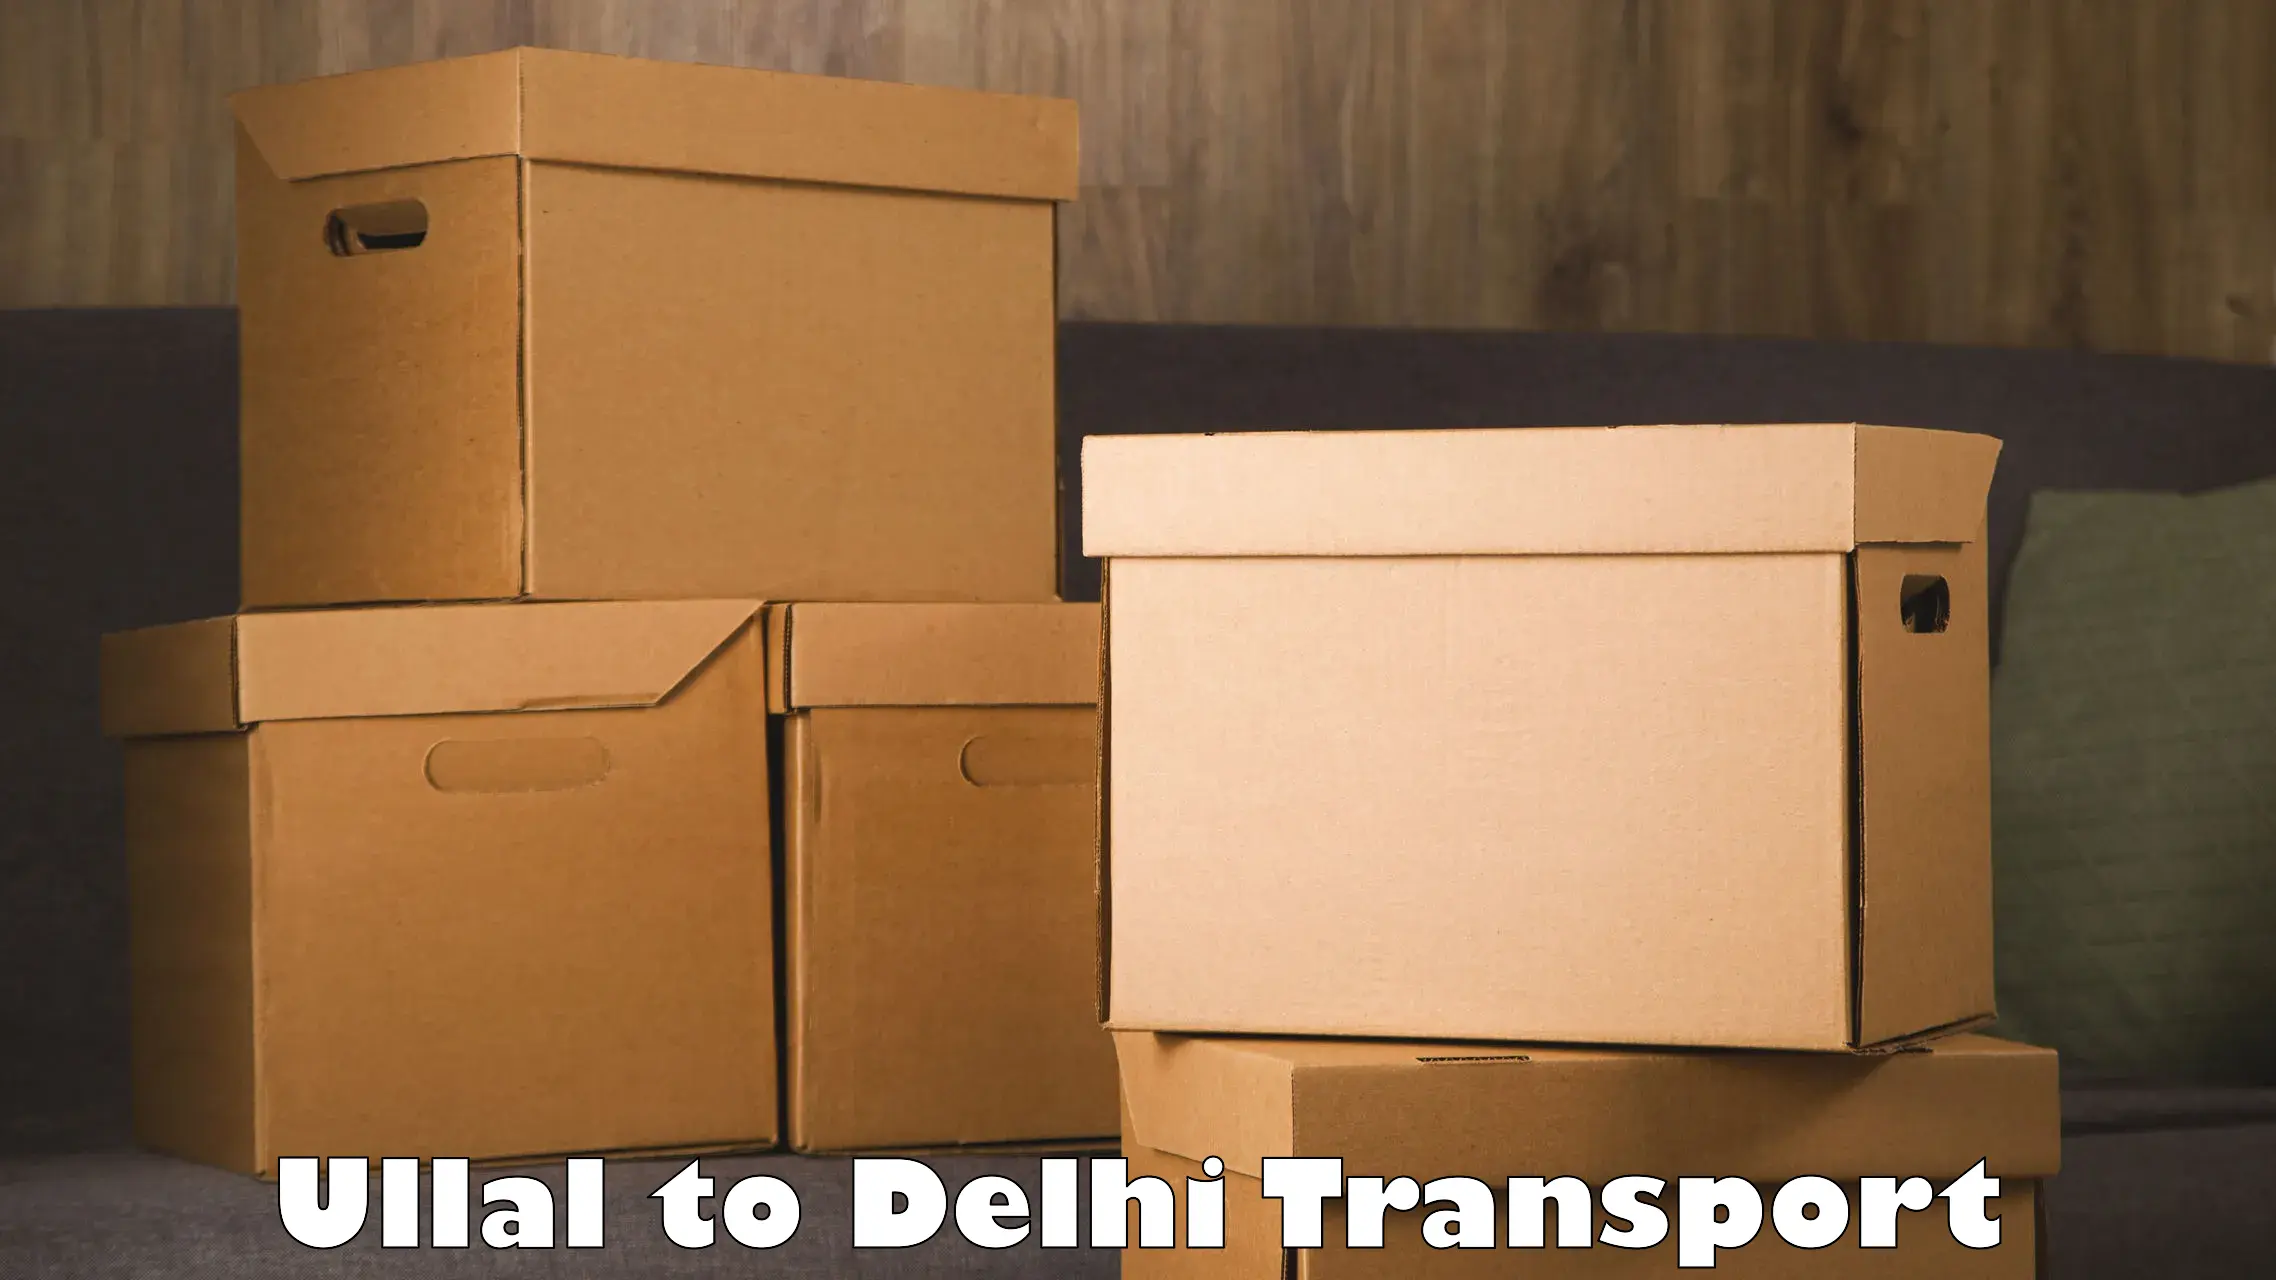 Nearest transport service Ullal to IIT Delhi